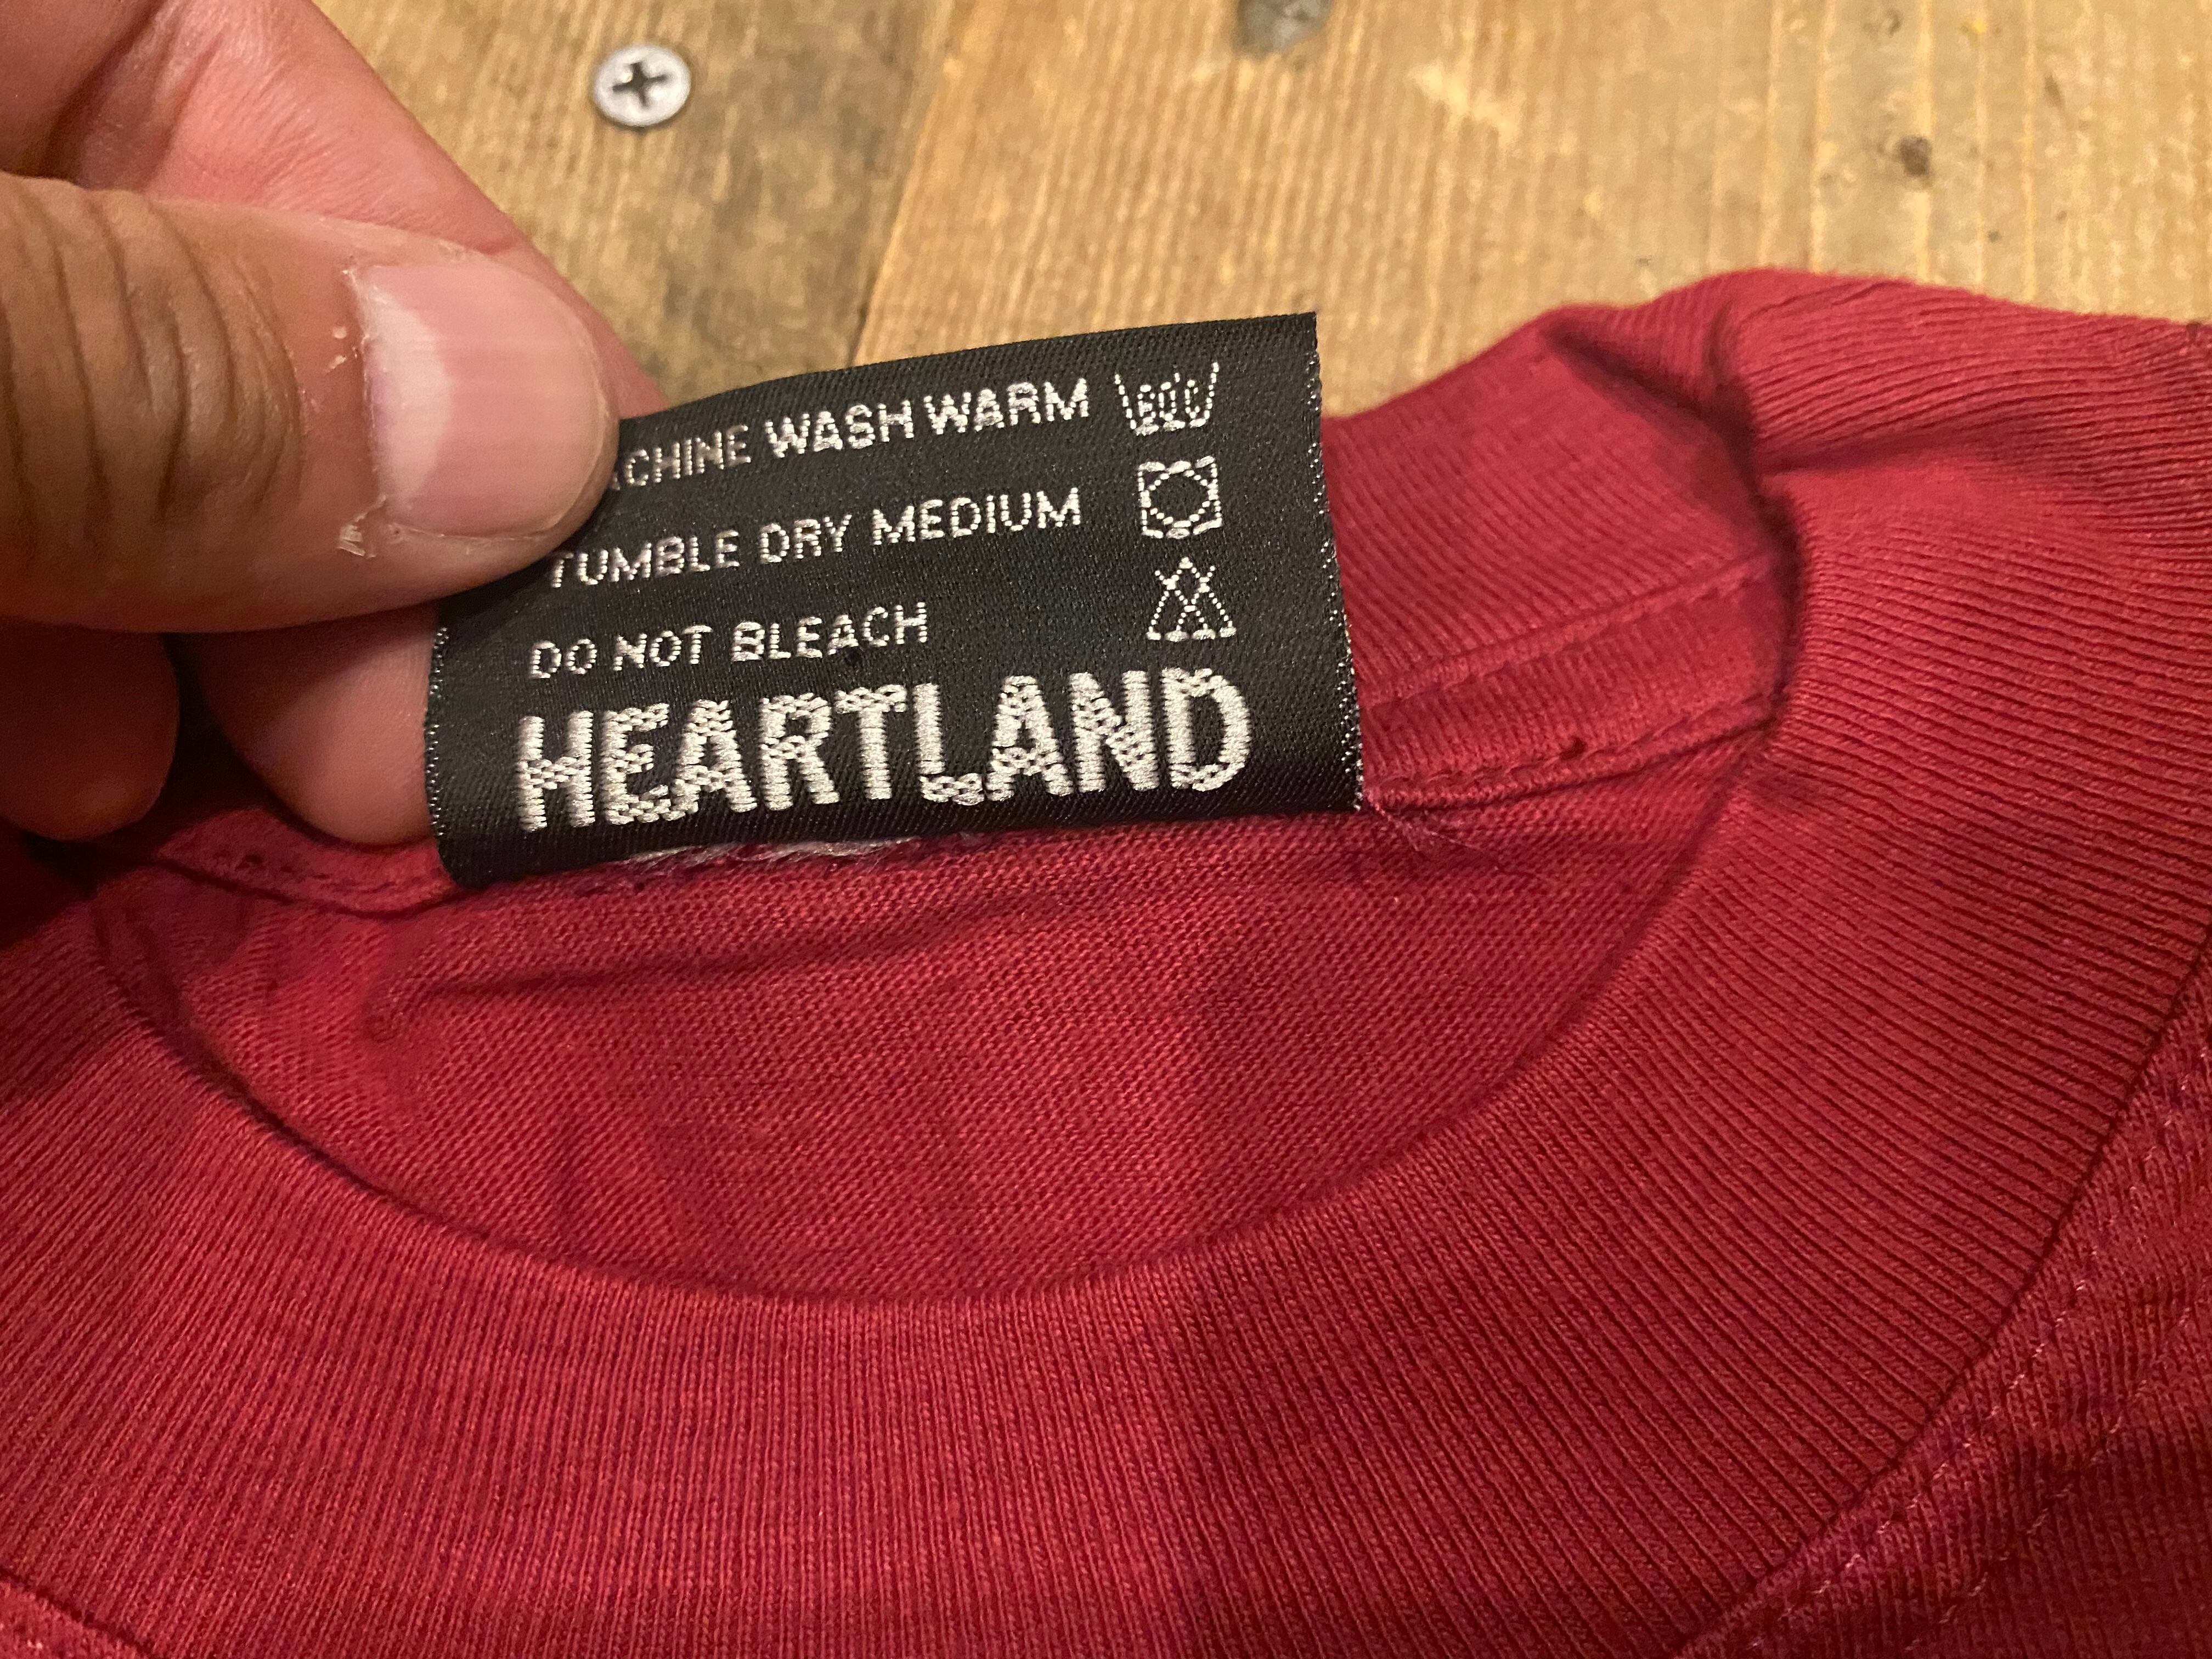 Jenny Holzer Tシャツ Truisms HEARTLAND